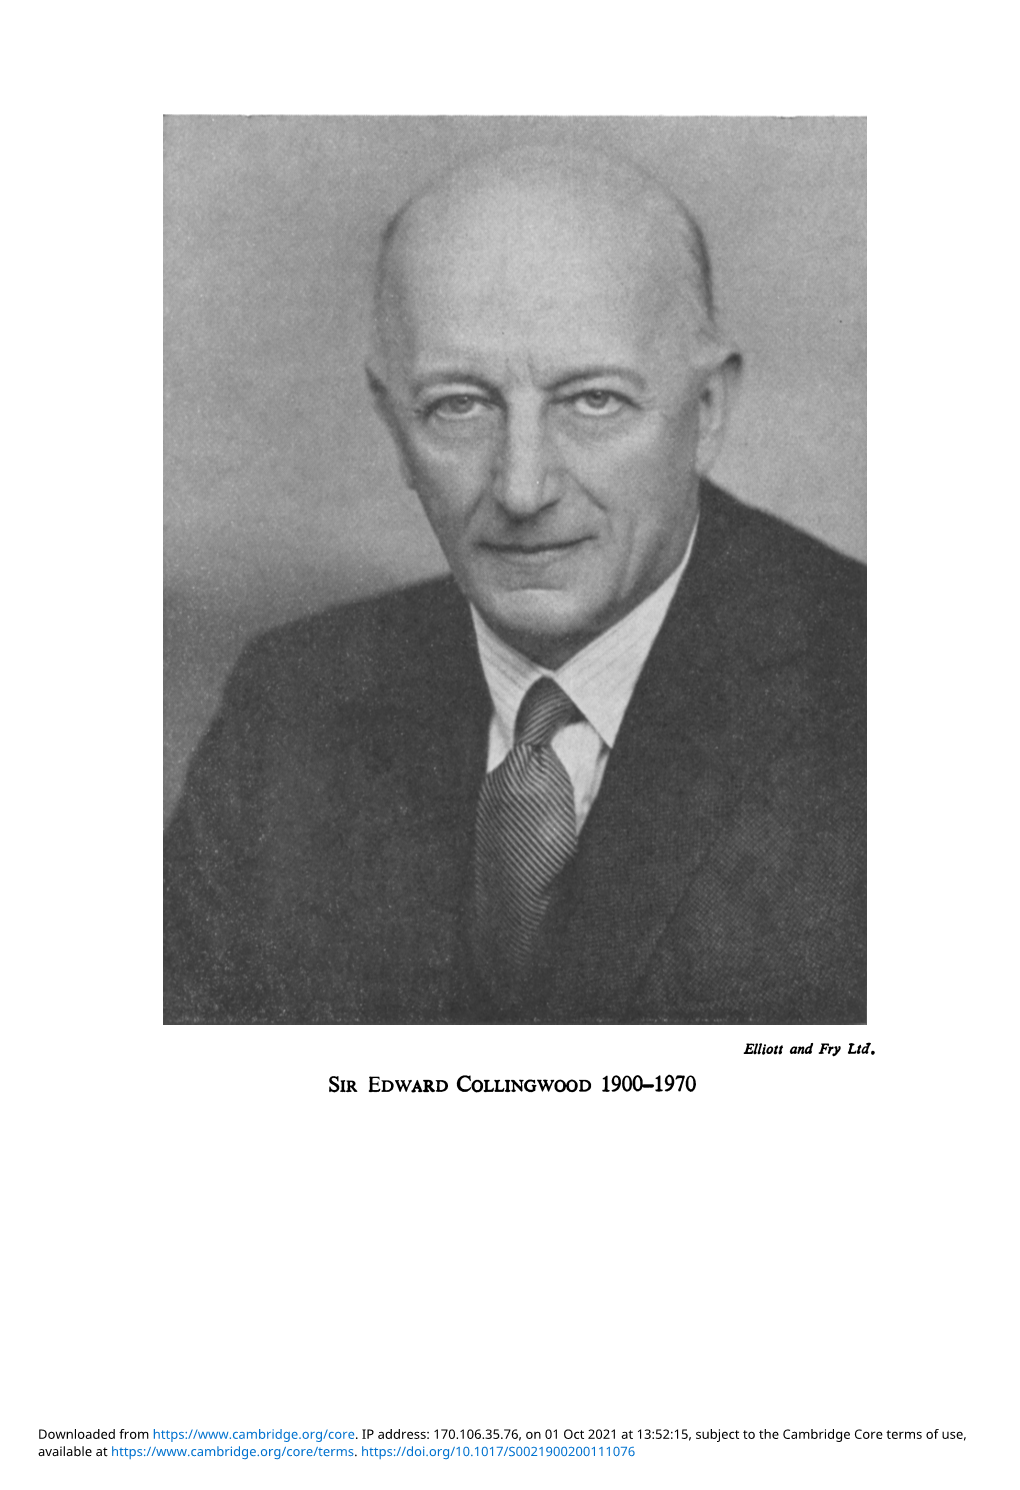 Sir Edward Collingwood 1900-1970